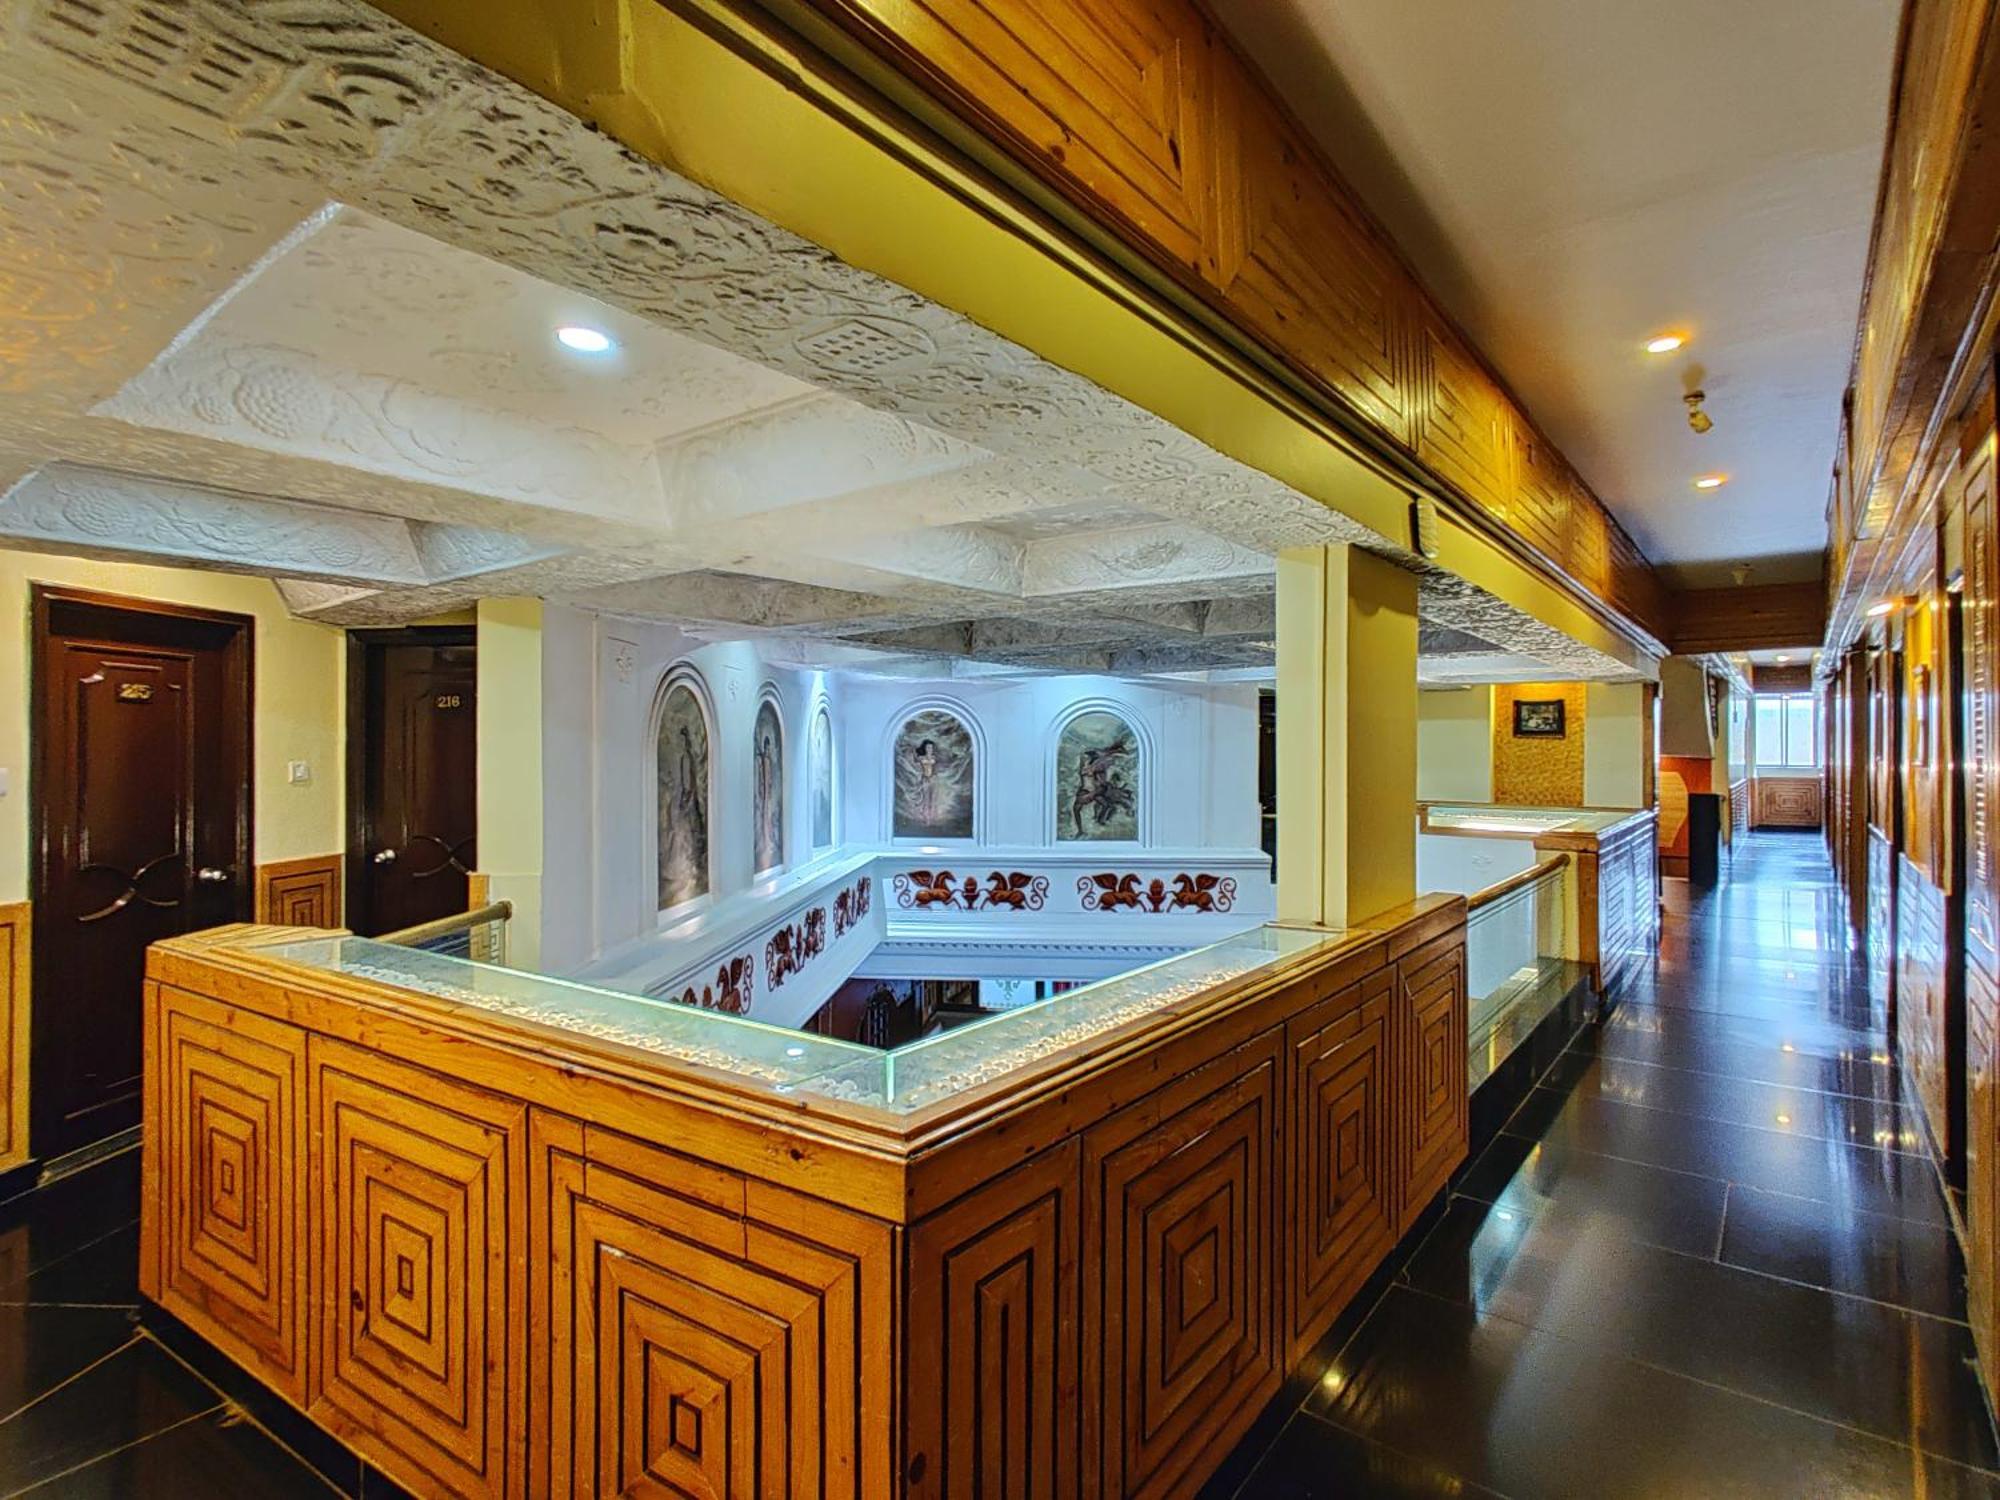 Hotel Pratap Heritage Mahabaleshwar Exterior photo